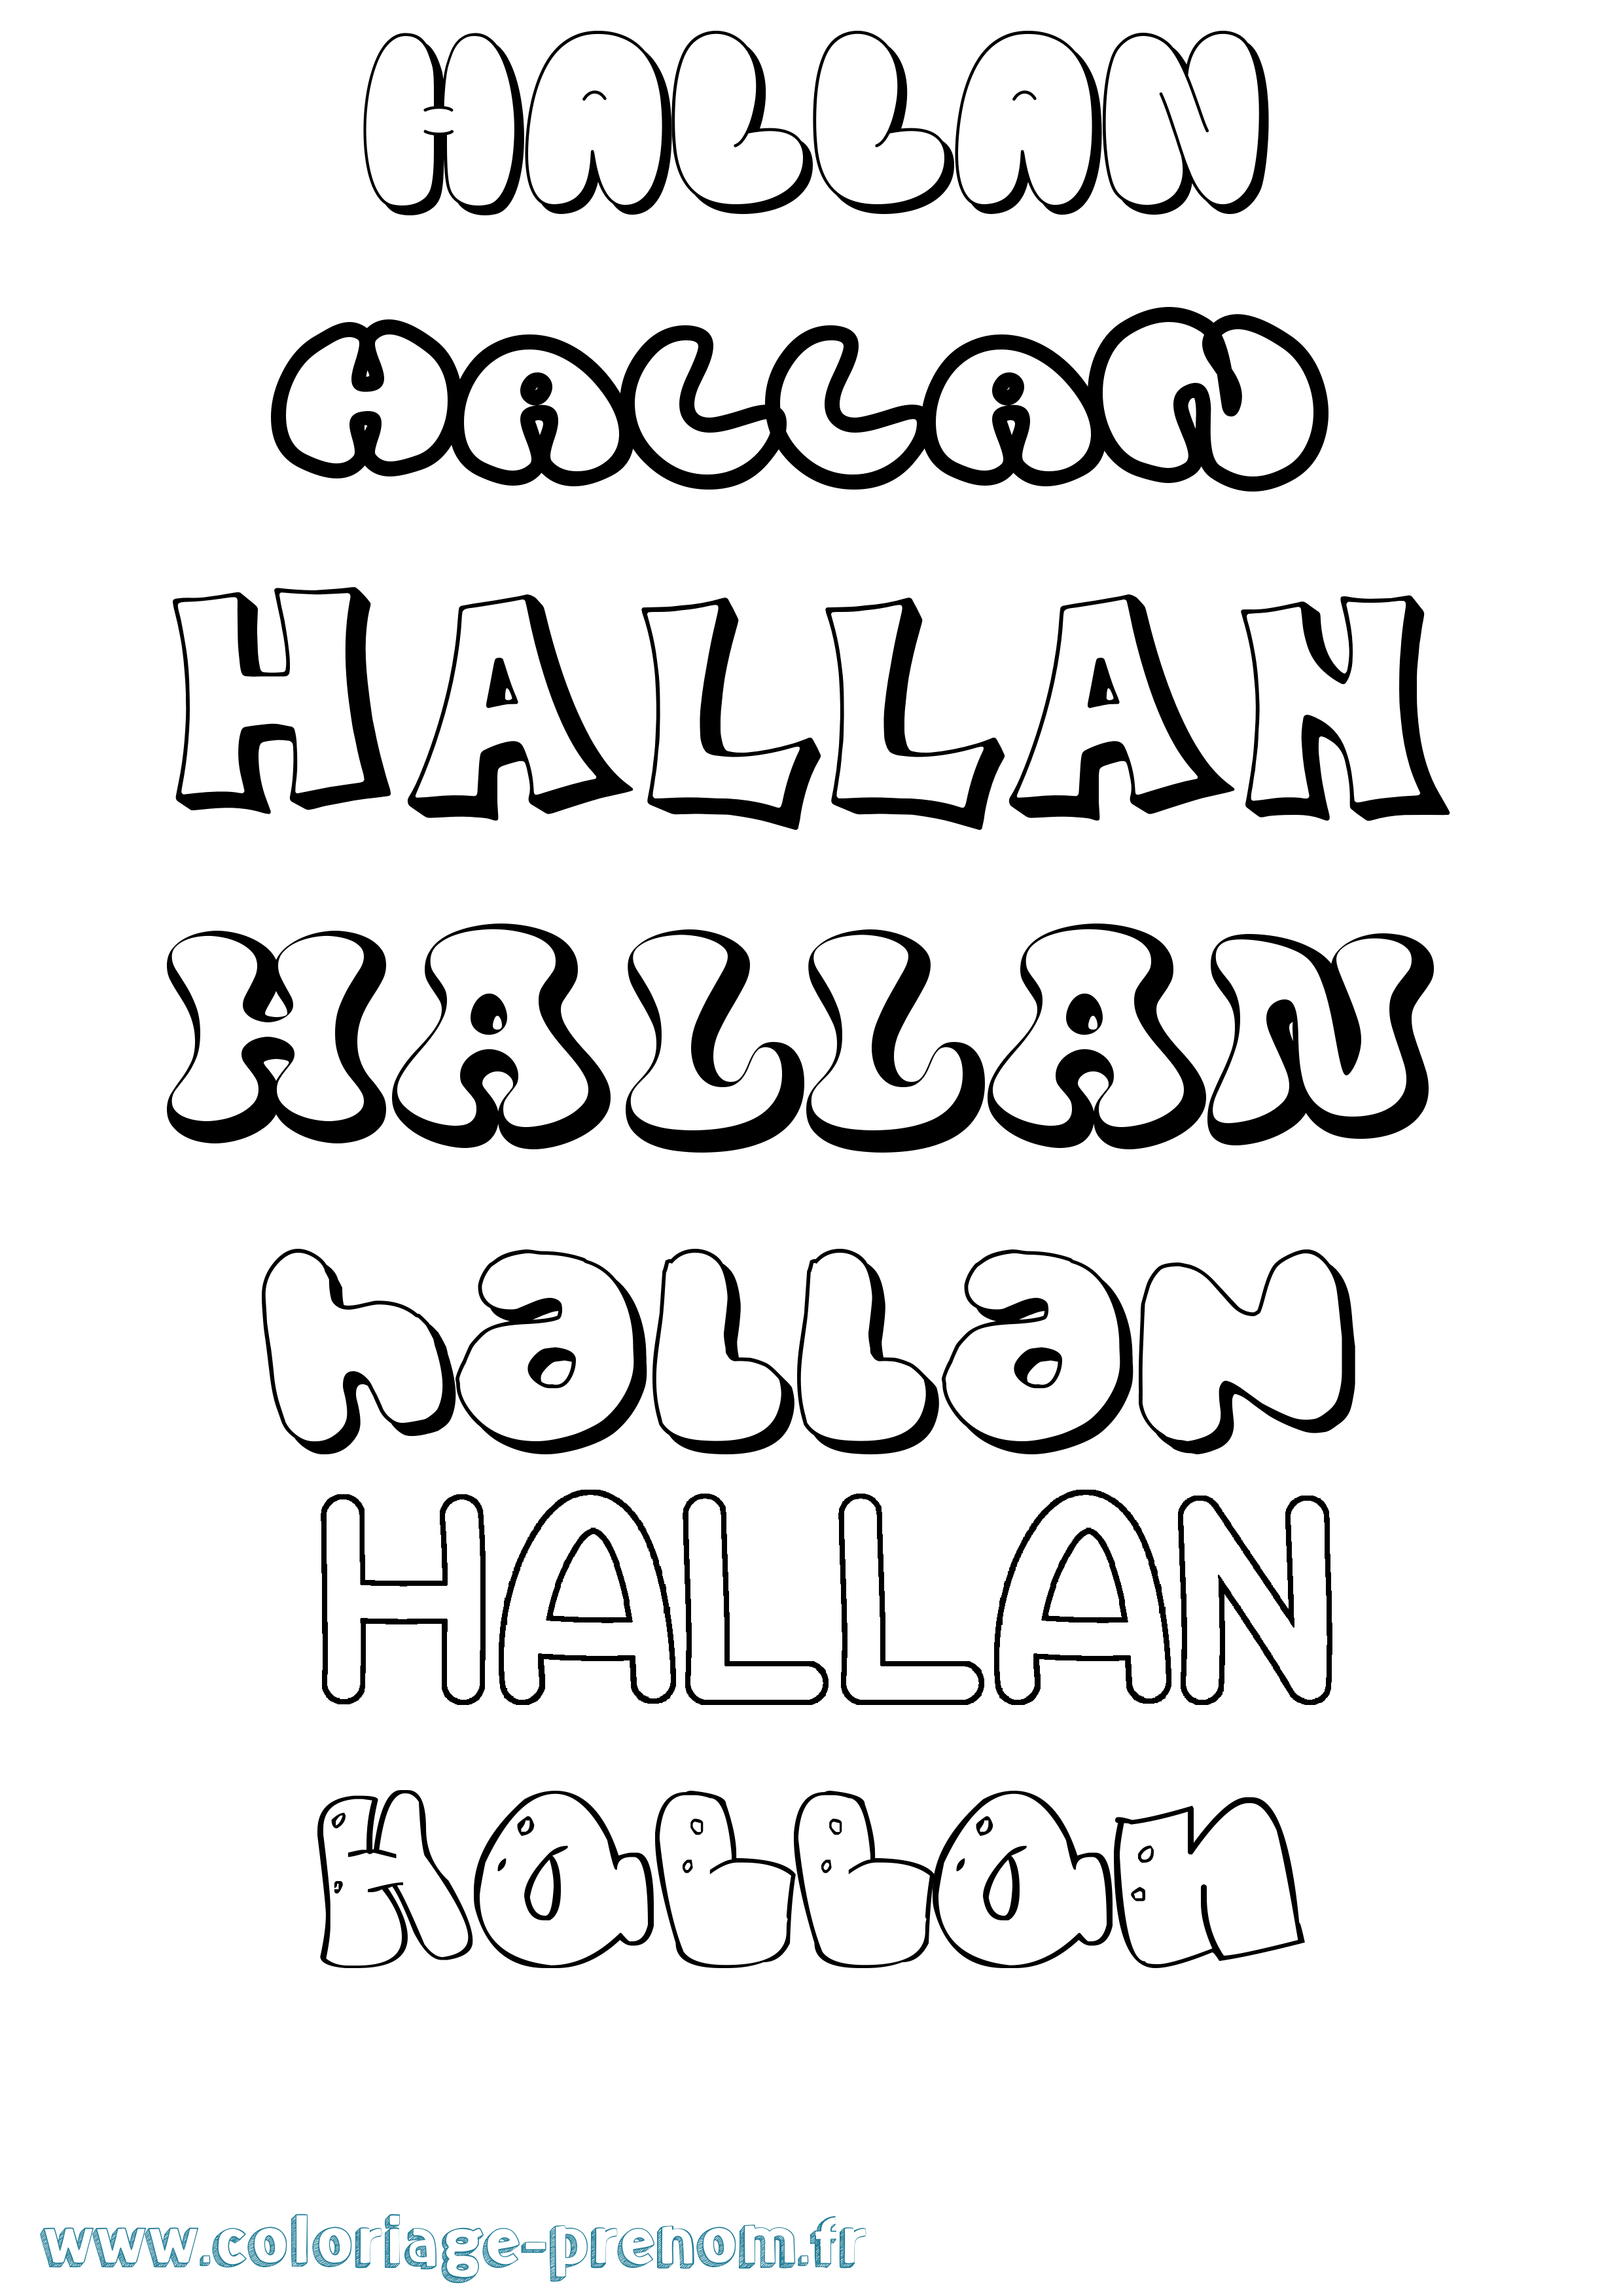 Coloriage prénom Hallan Bubble